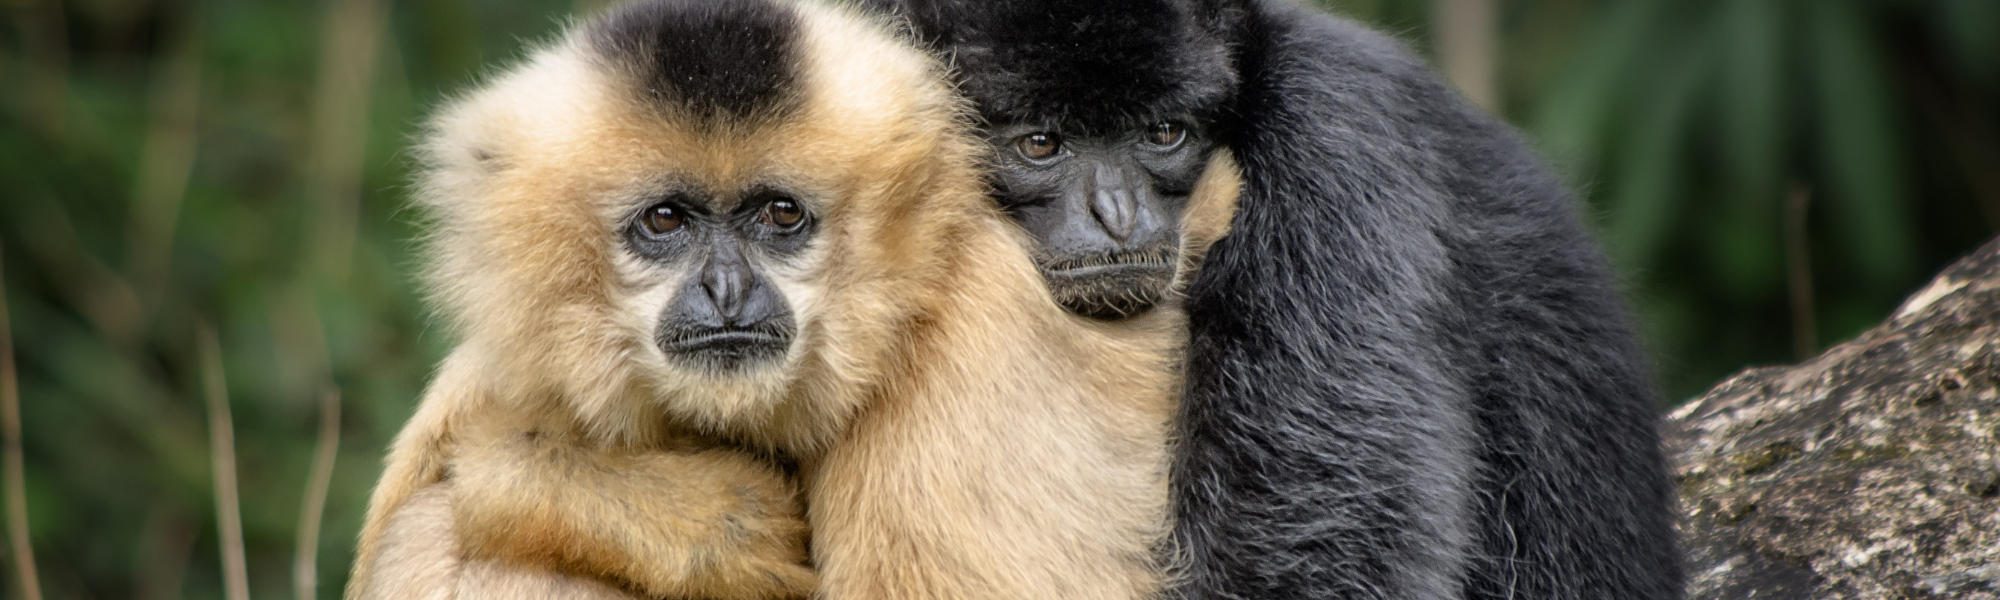 Varíola dos macacos: como se prevenir?